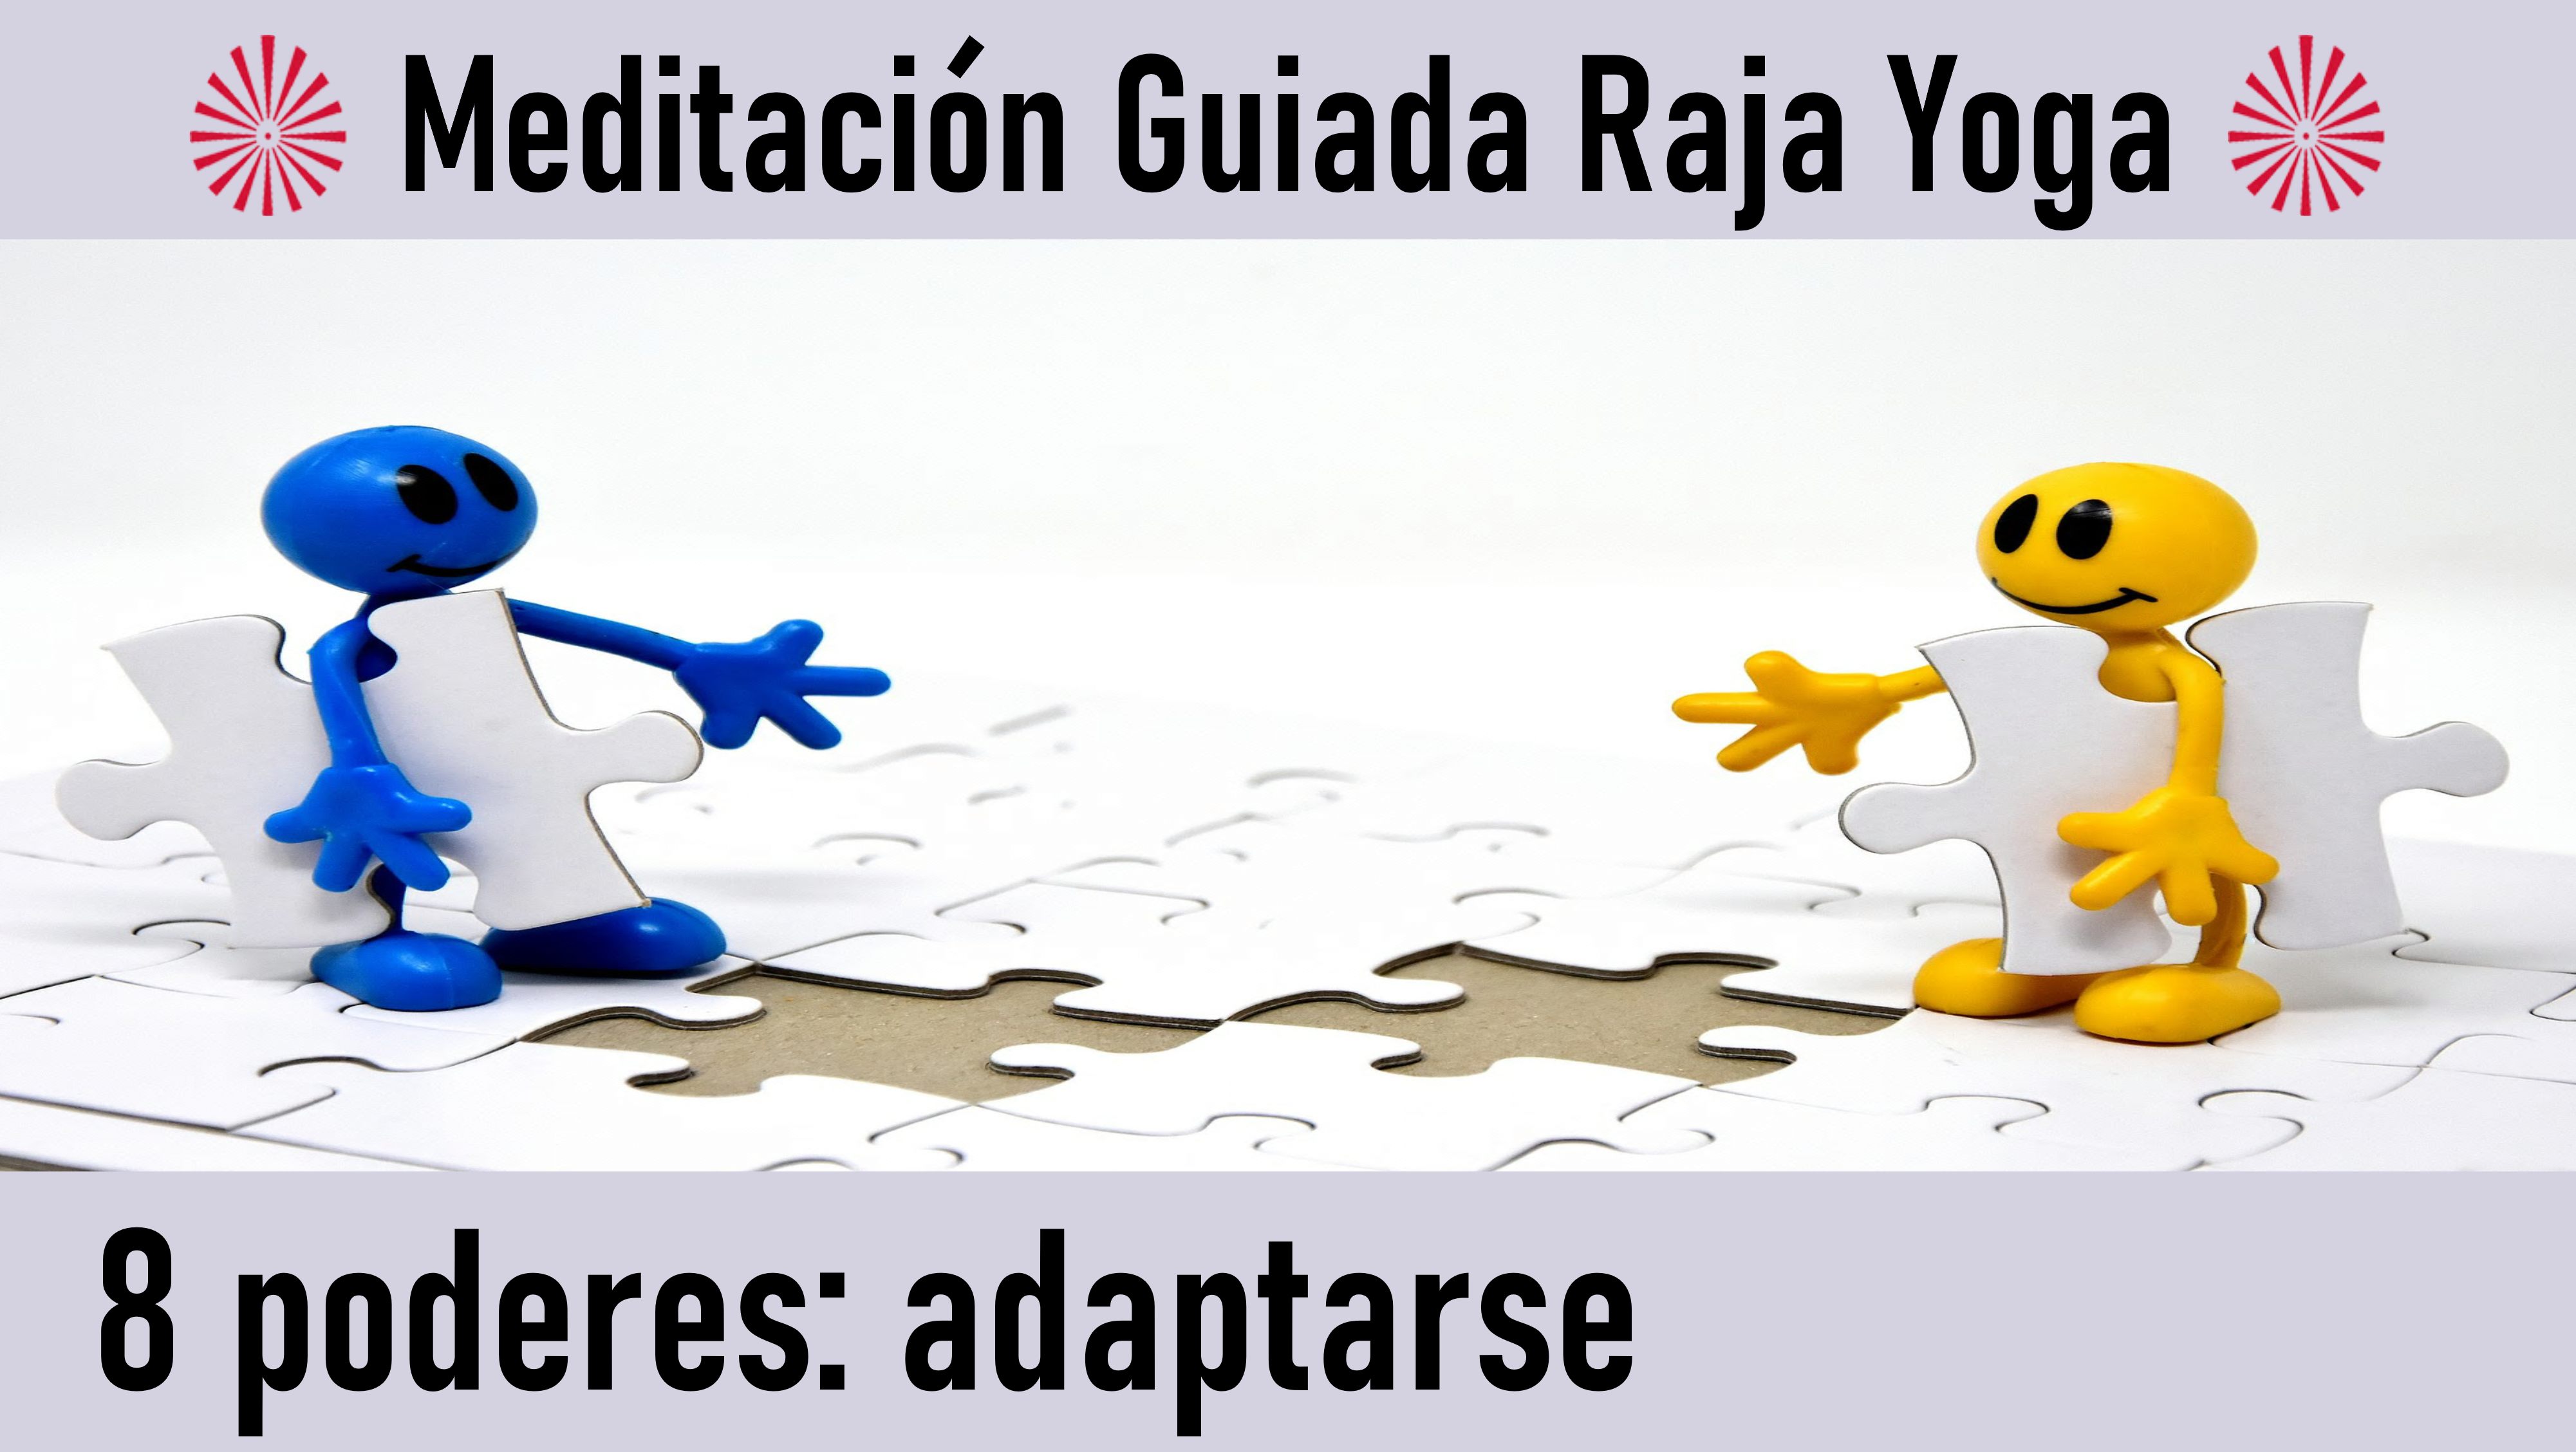 Meditación Raja Yoga: El poder de adaptarse (30 Junio 2020) On-line desde Canarias